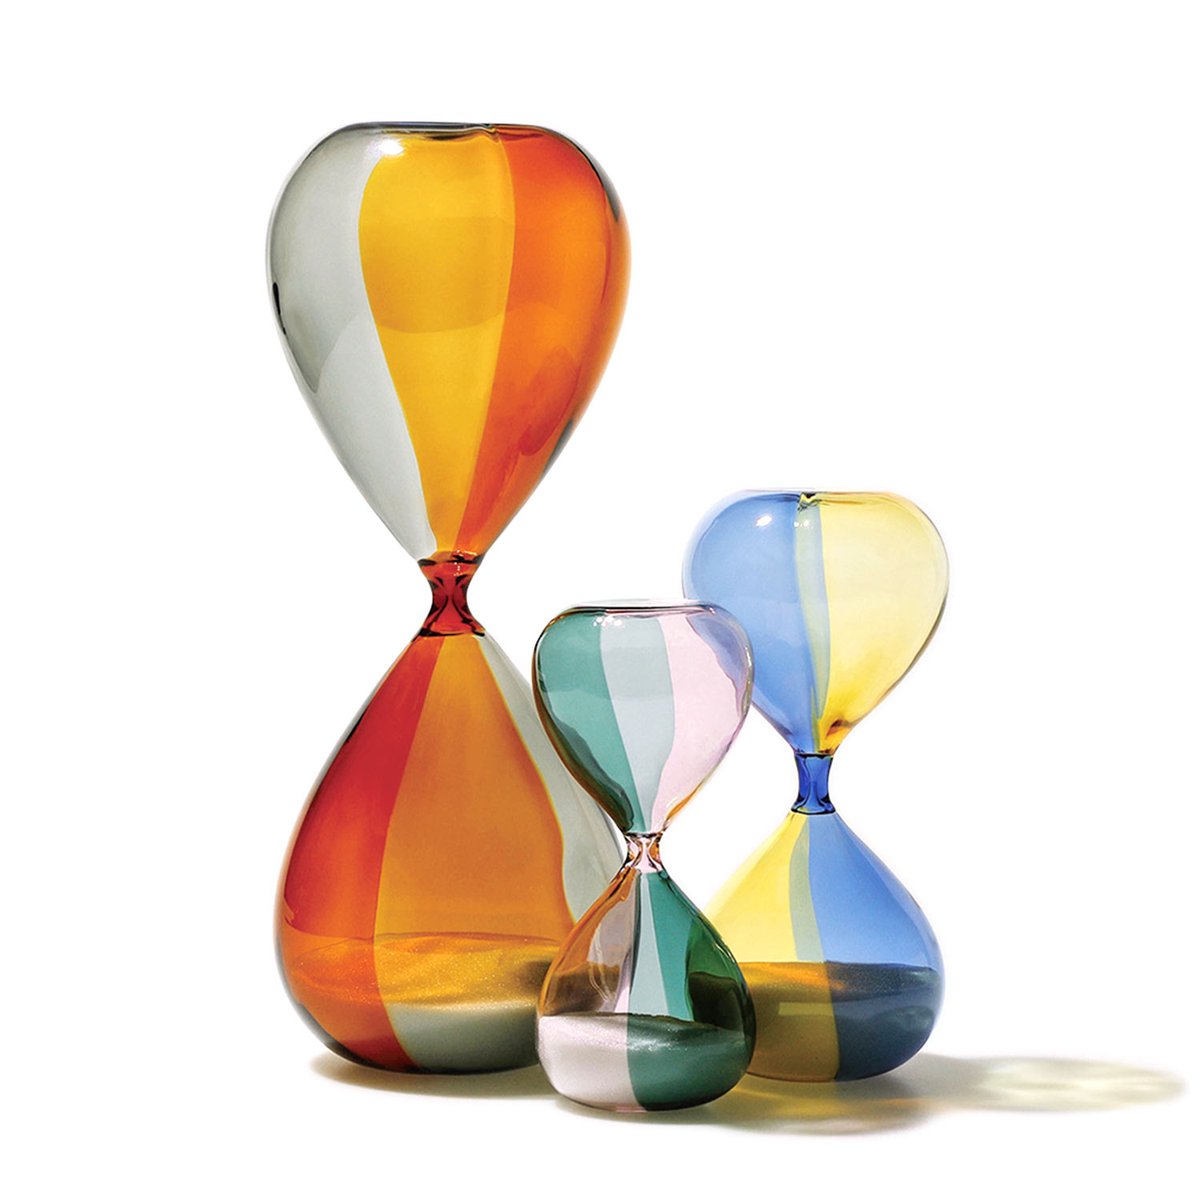 透明感あふれる2色の色ガラスを組み合わせた、オブジェのような「砂時計（バイカラー）」が新発売。

色ガラスの境目や繊細なくびれ部分など熟練の職人技が光ります。一人の職人が1日に30個しか制作できない希少な砂時計です。


カラーは3種類、SMLの3サイズ展開です。
hightide.co.jp/p/search?sort=…